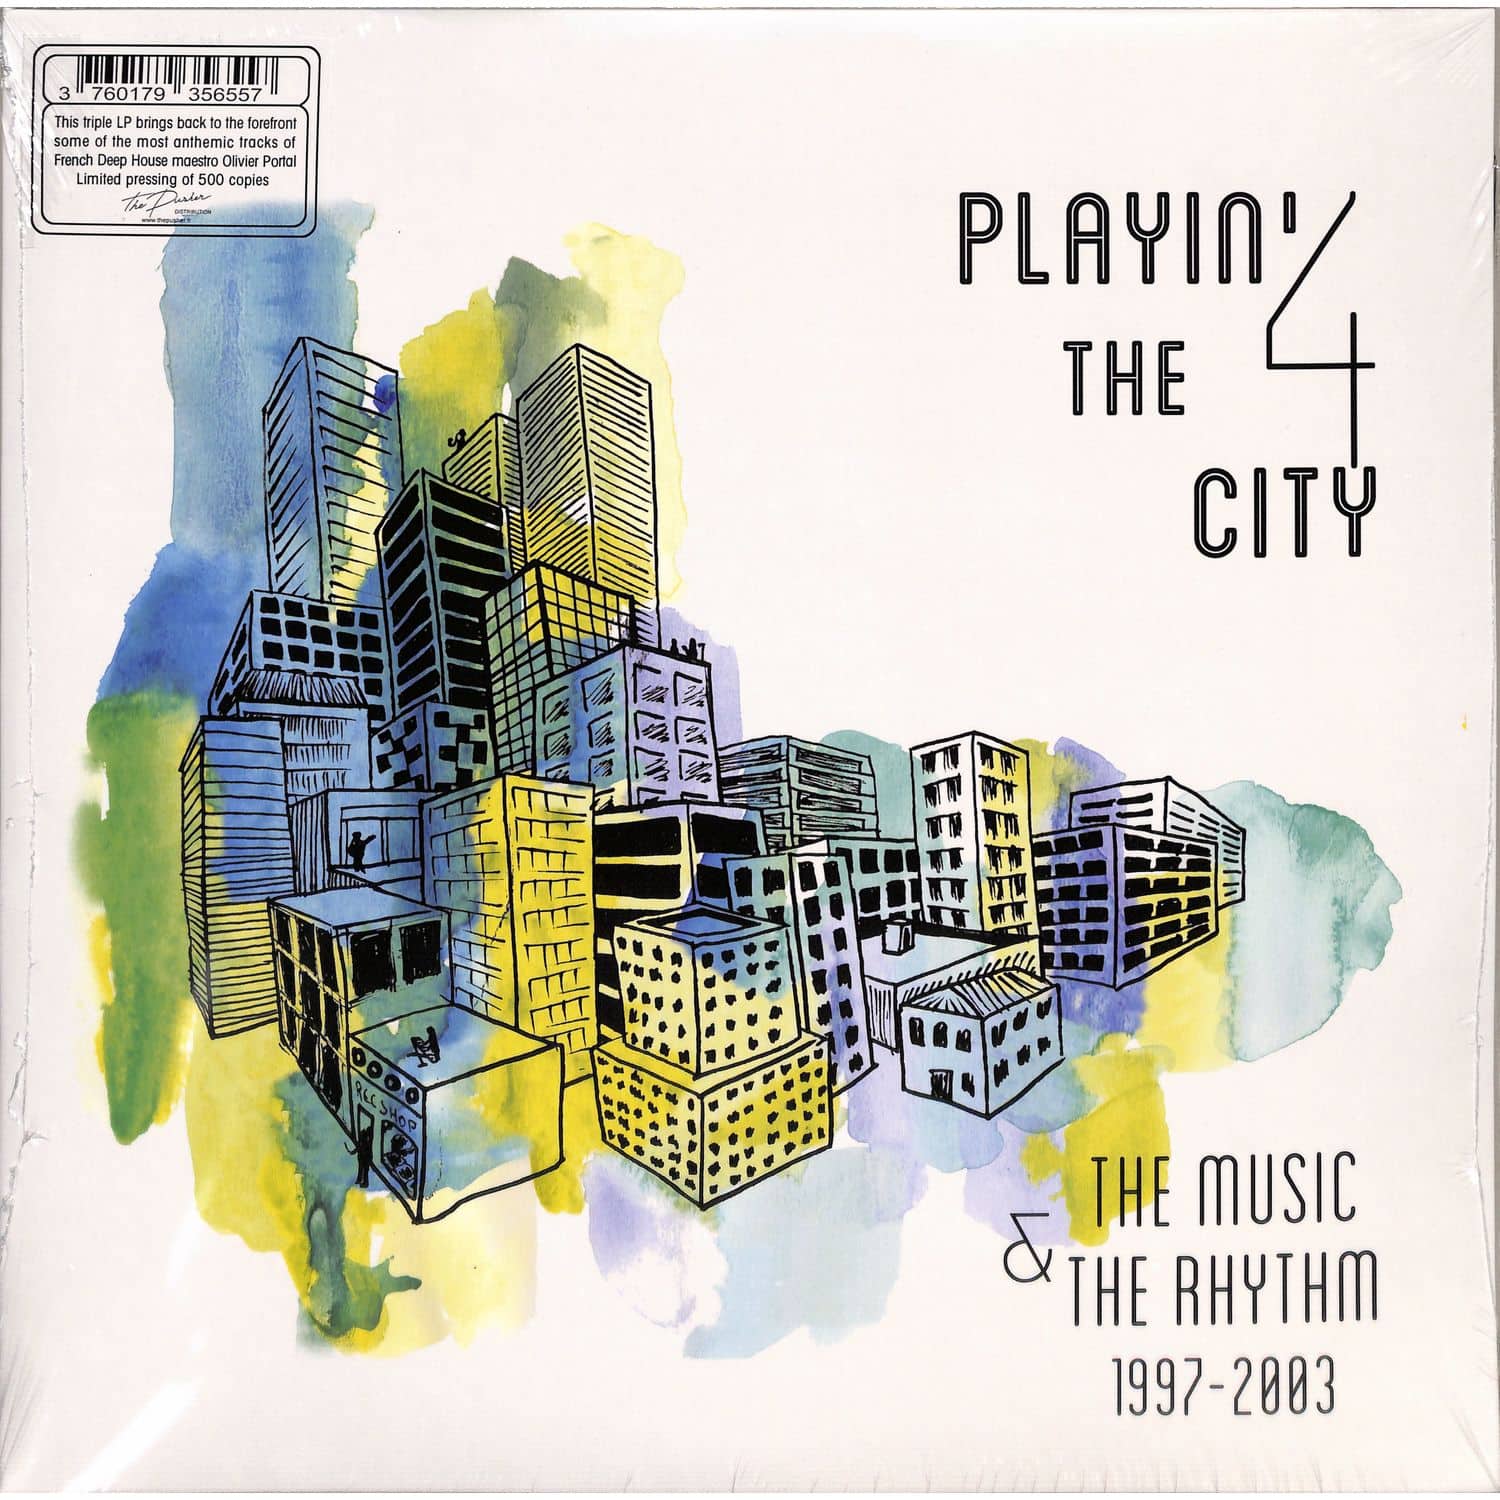 Playin 4 The City - THE MUSIC THE RHYTHM 1997-2003 